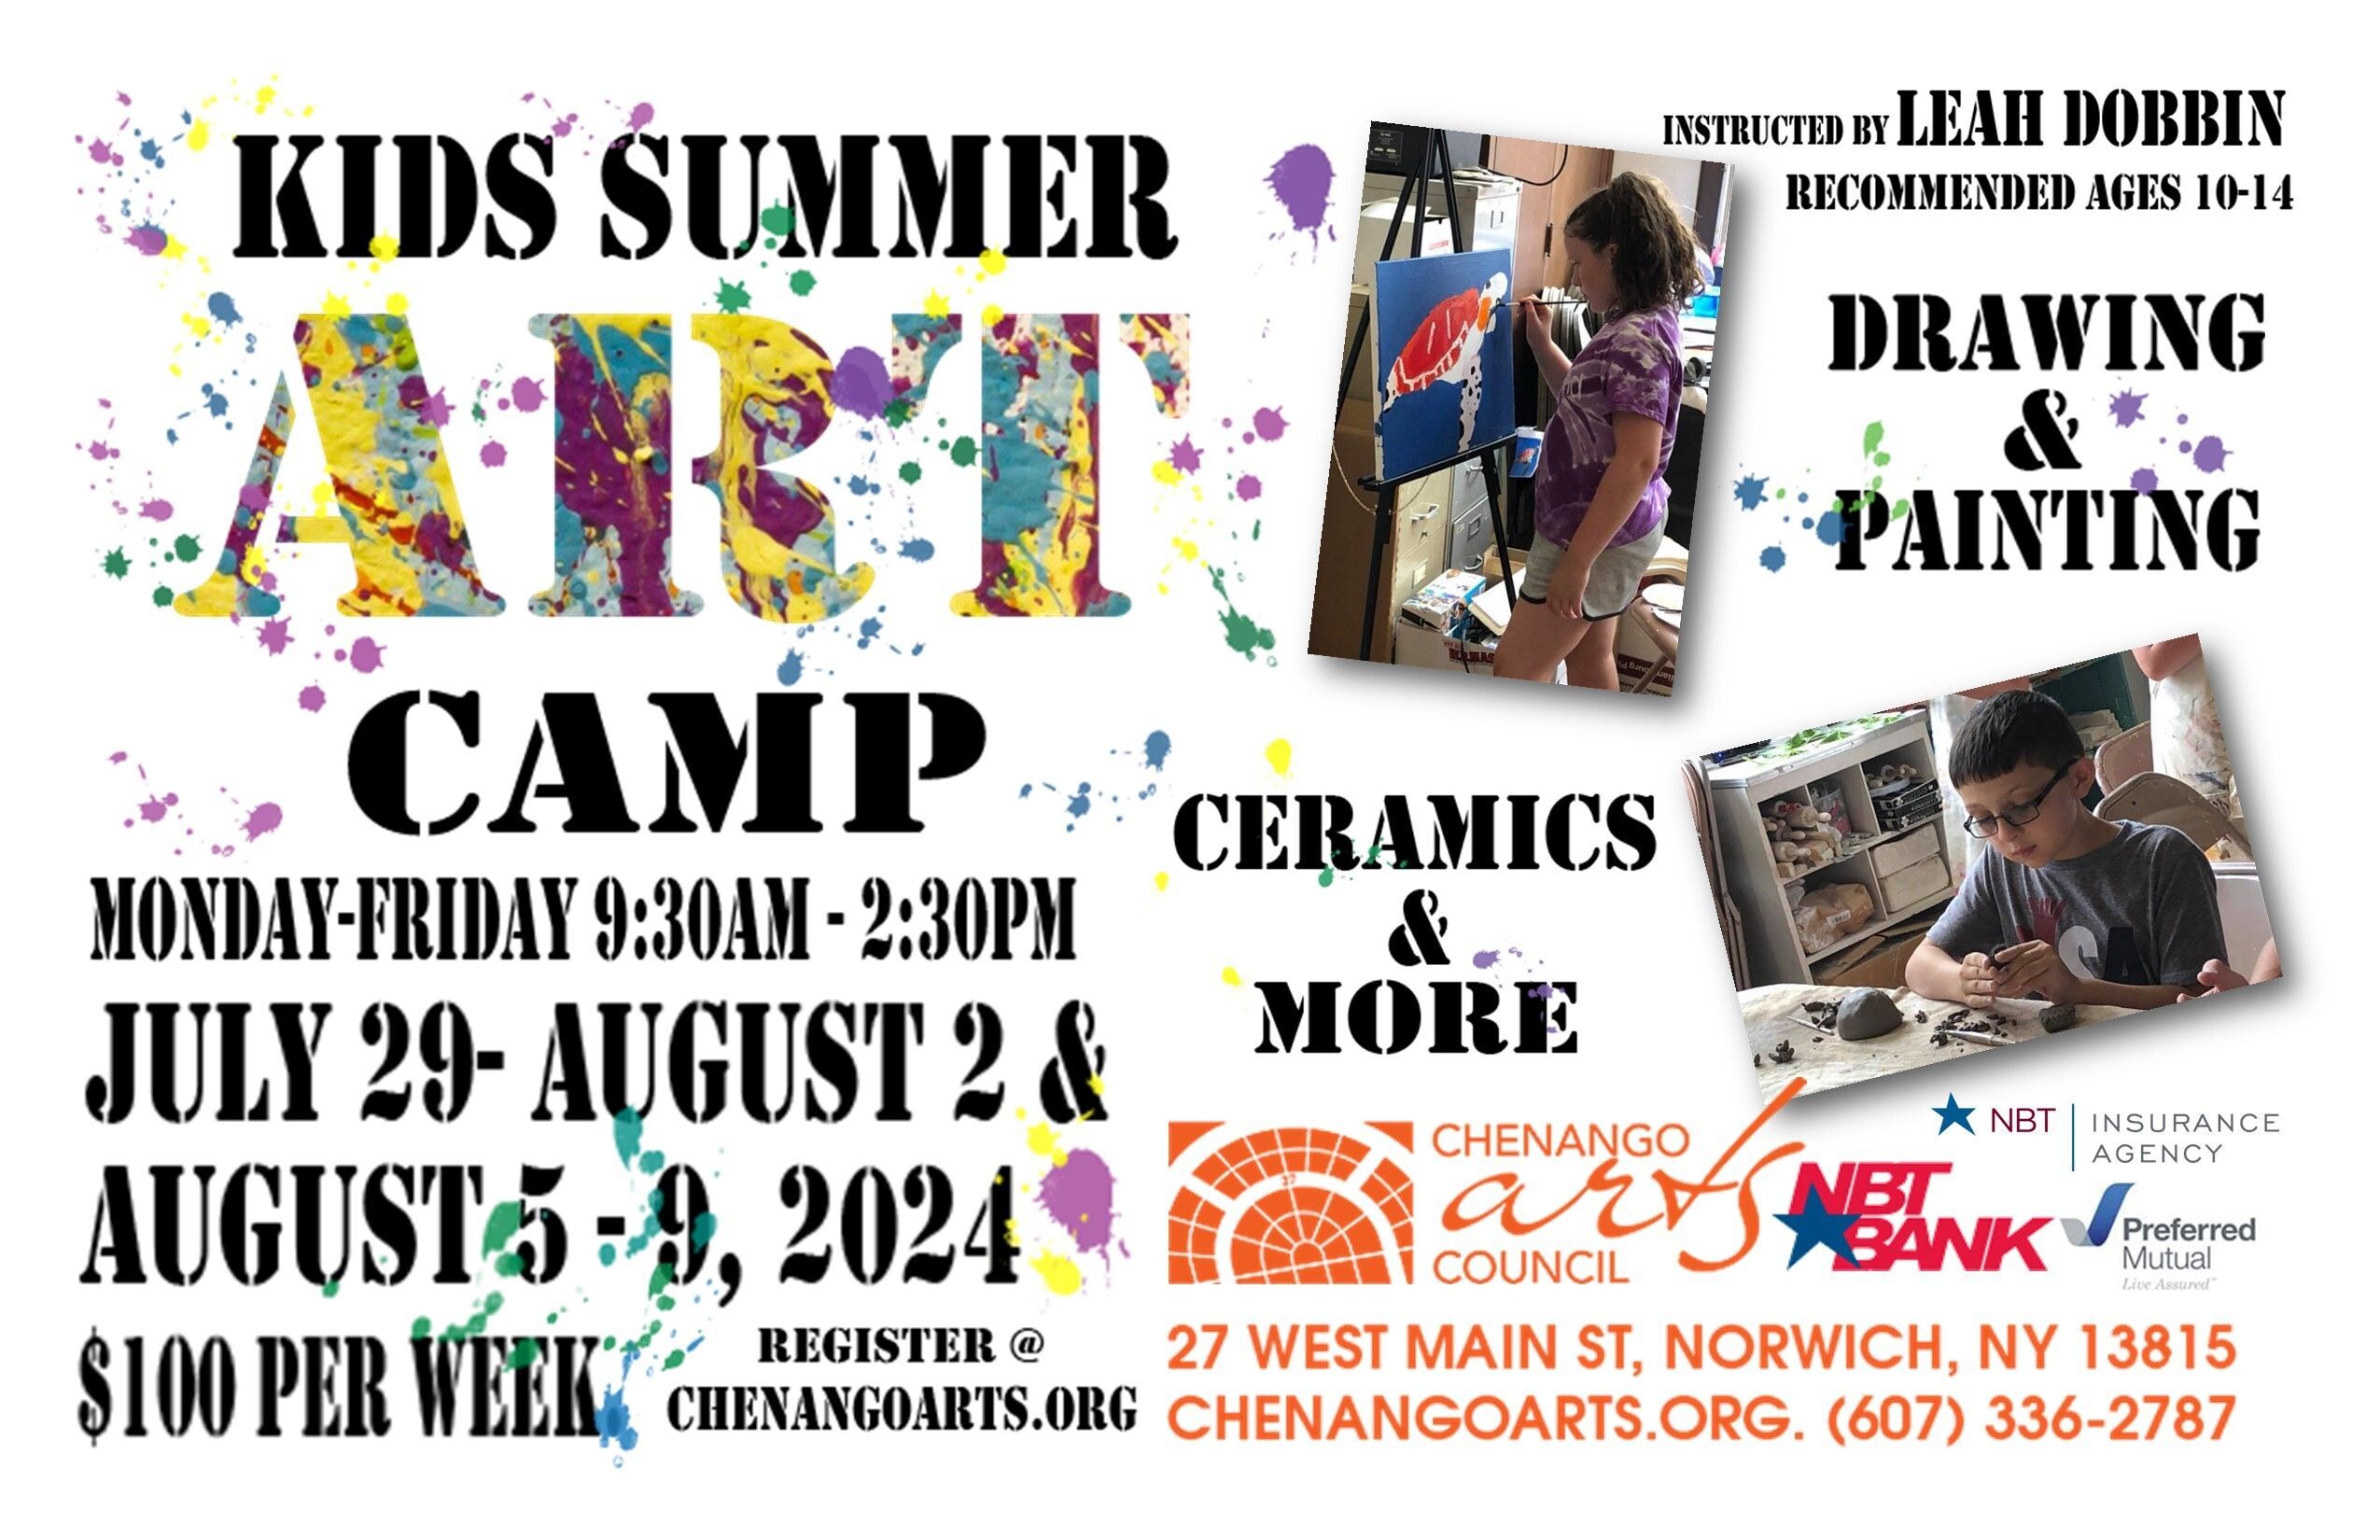 Kids Summer Art Camp